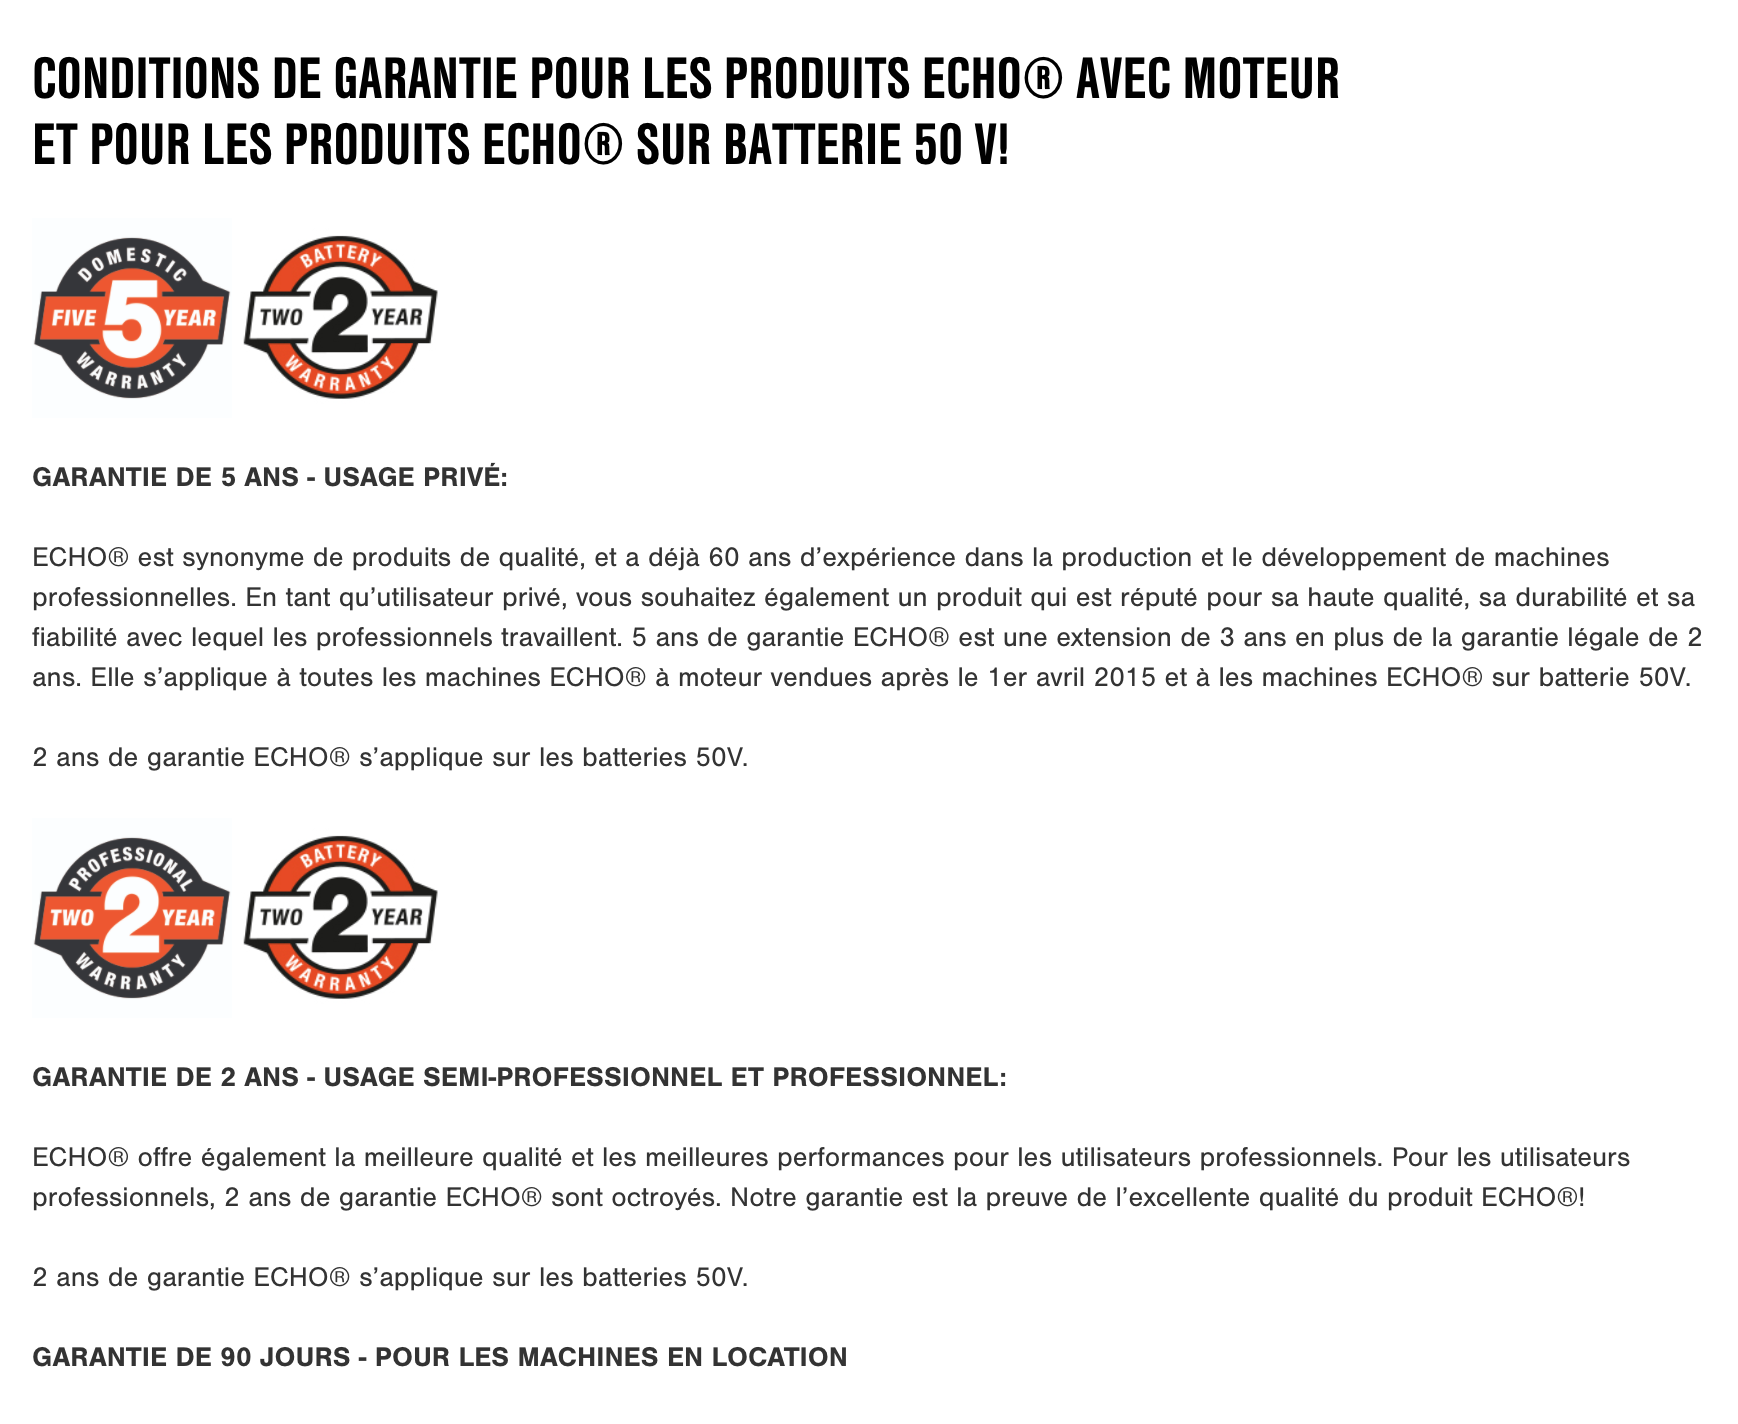 Conditions de garantie ECHO - D mini moteurs - Laval